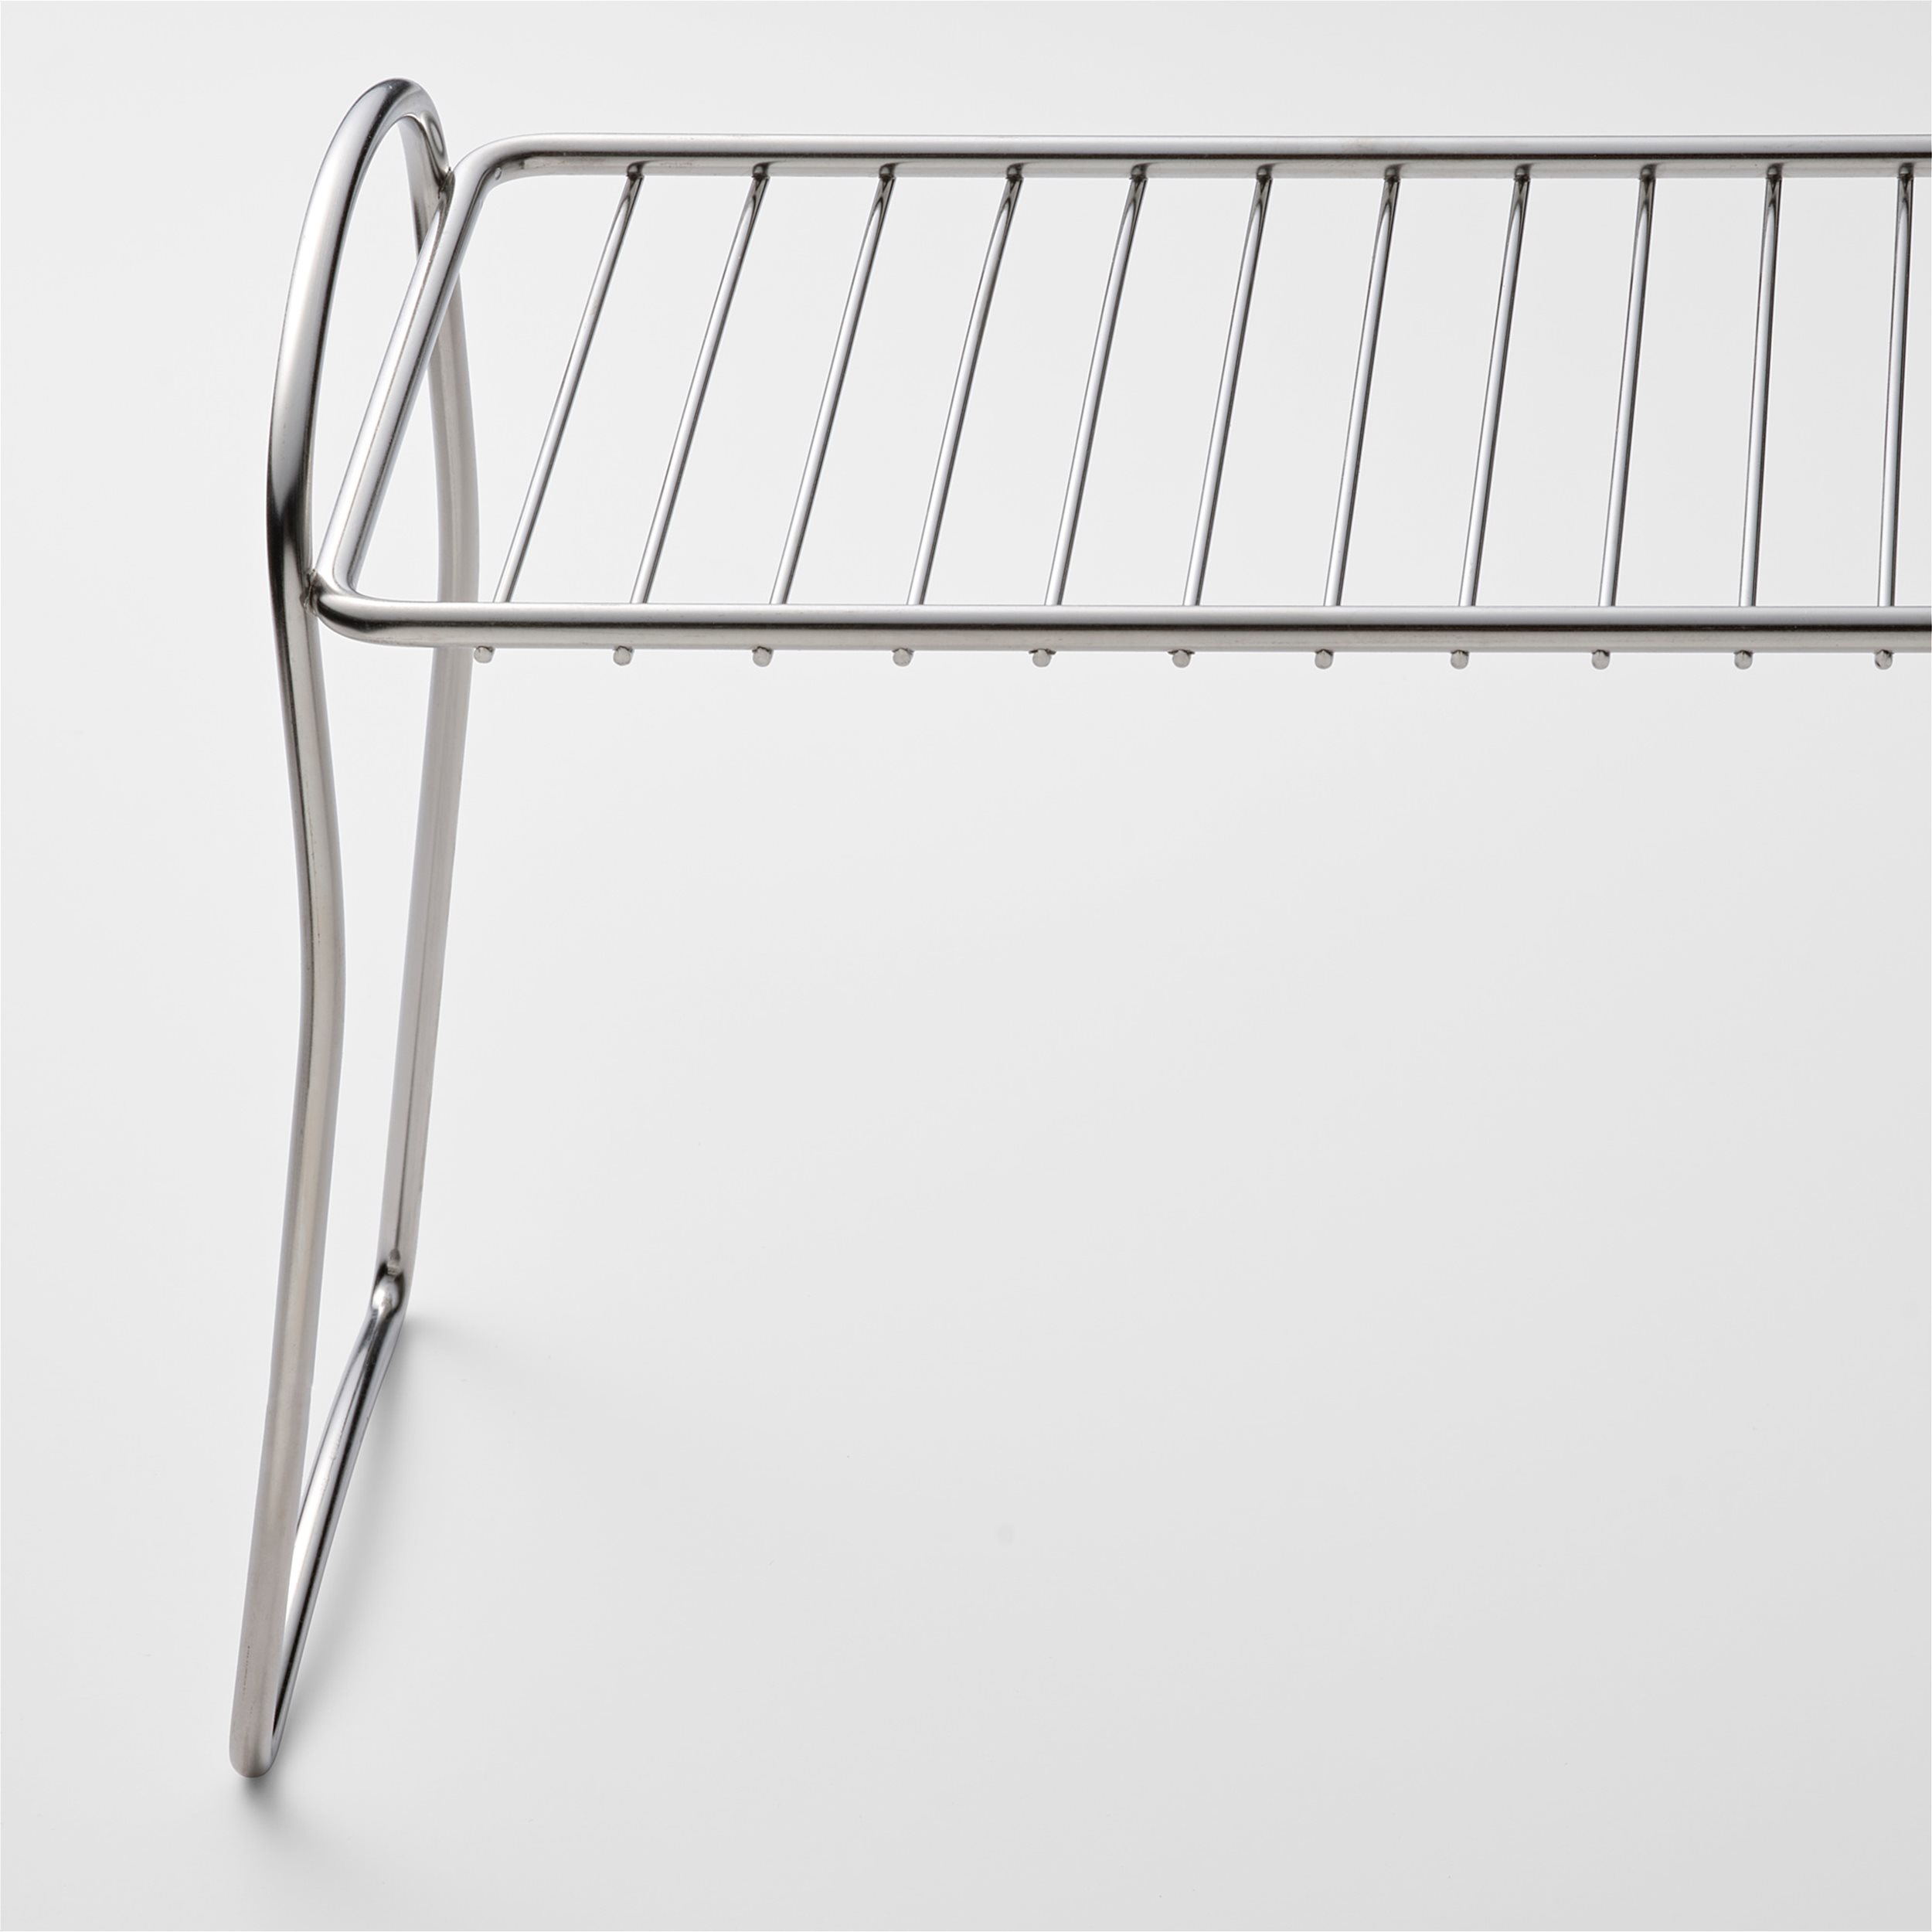 VALVARDAD dish drying shelf, 13x32 cm | IKEA Greece